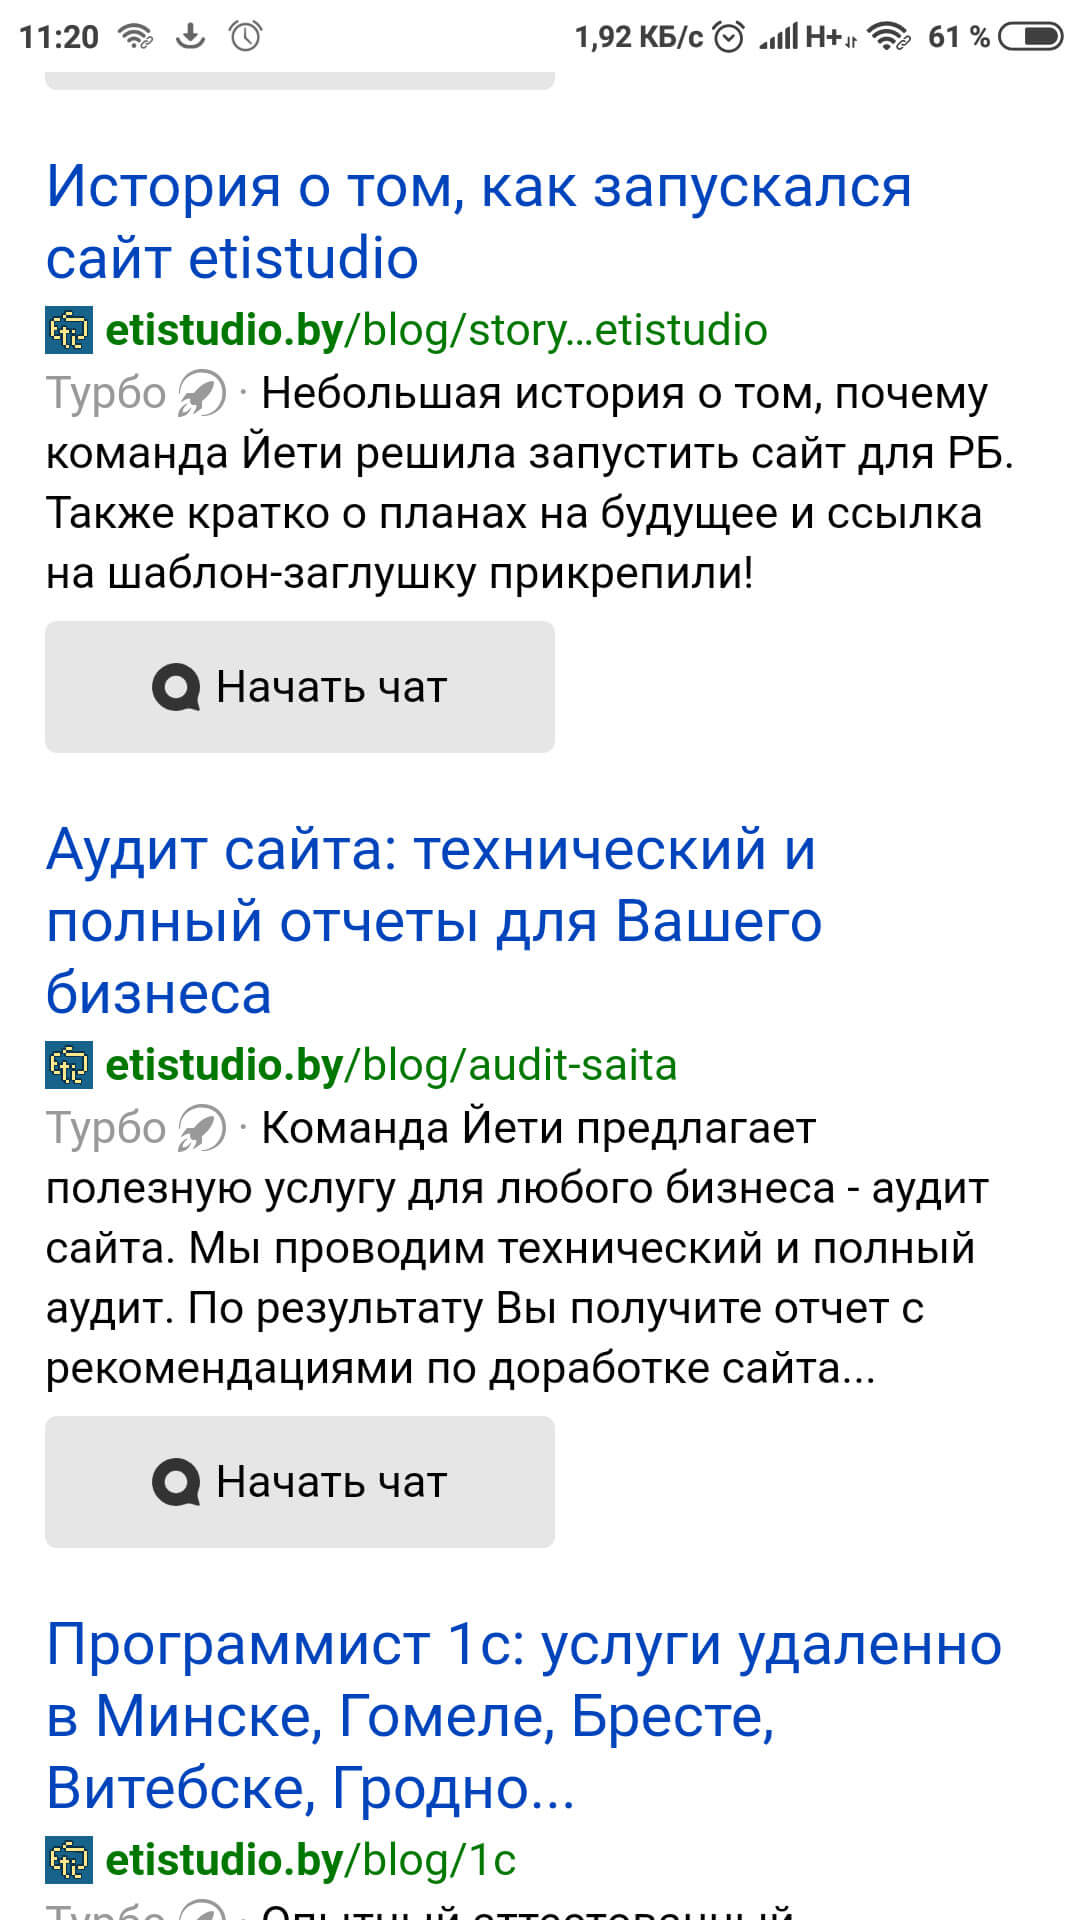 Пример отображения турбо страниц сайта в поисковой выдаче Яндекс в мобильном поиске